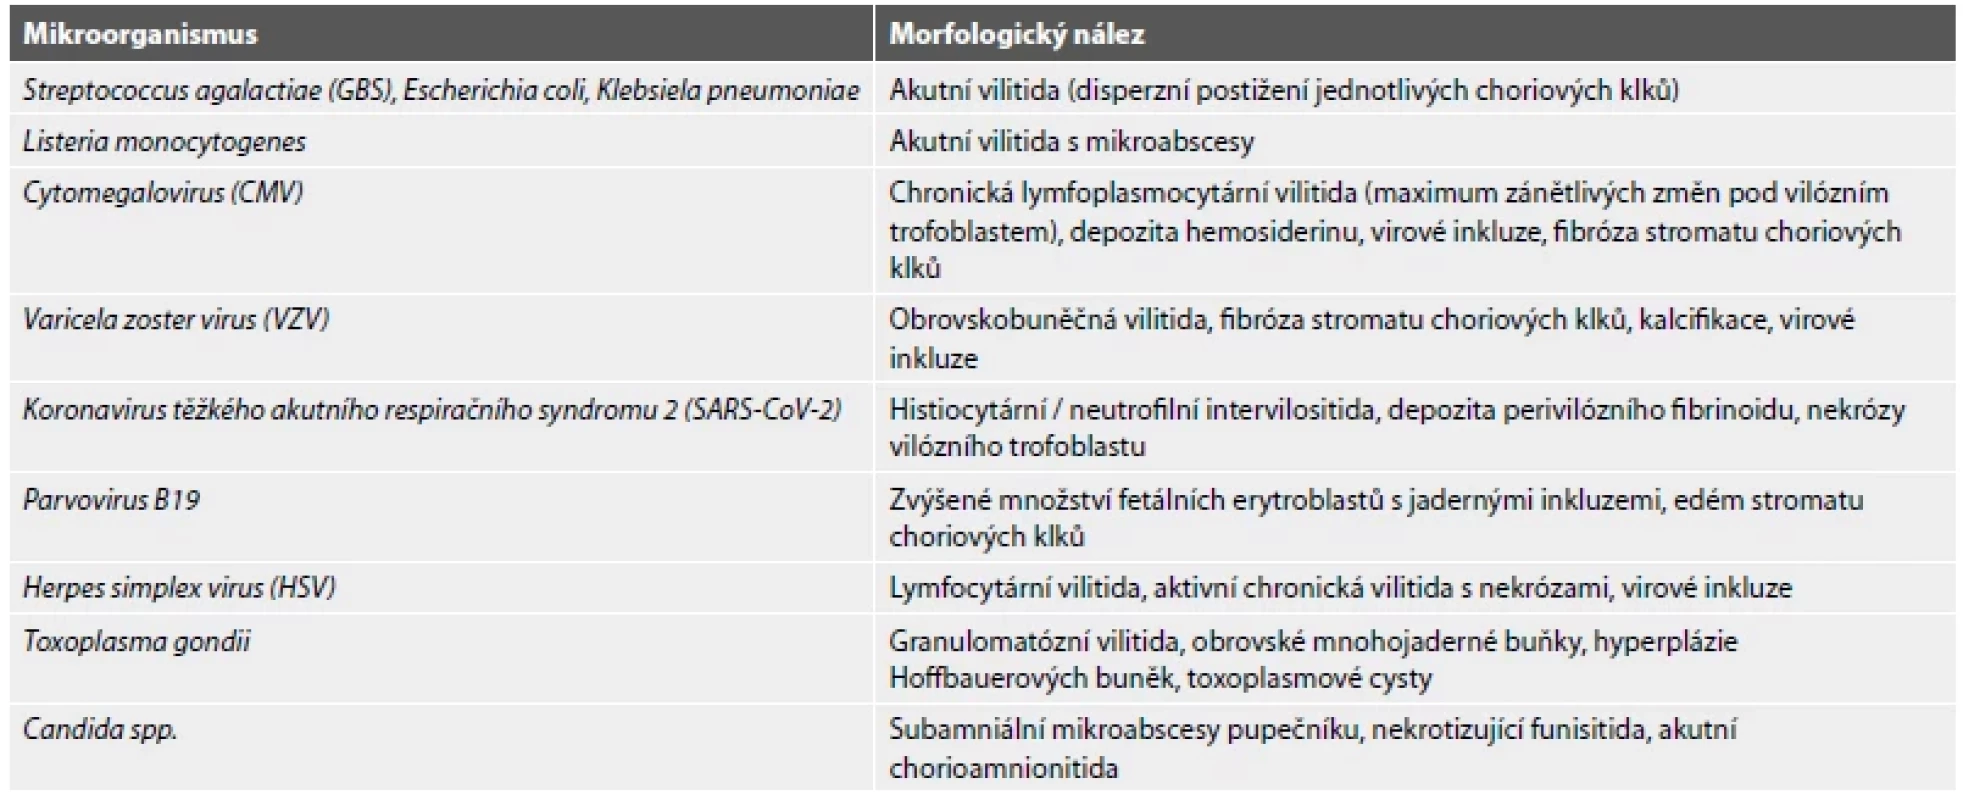 Charakteristické morfologické nálezy v placentě při infekci vybranými mikroorganismy.